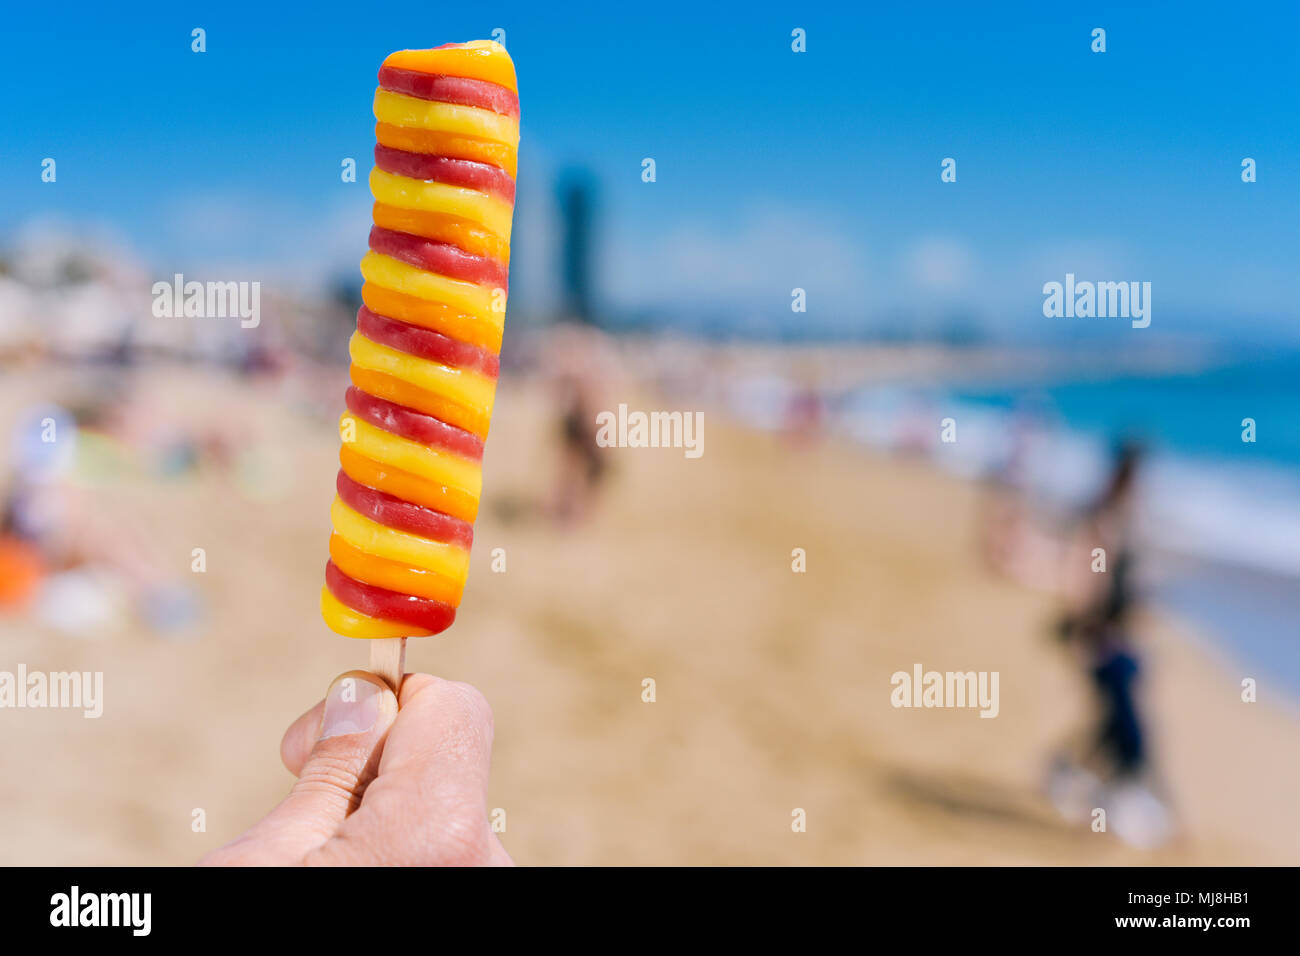 Nahaufnahme von einem erfrischenden Popsicle in der Hand eines jungen kaukasischen Mann am Strand, mit unkenntlich Leute im Hintergrund Stockfoto